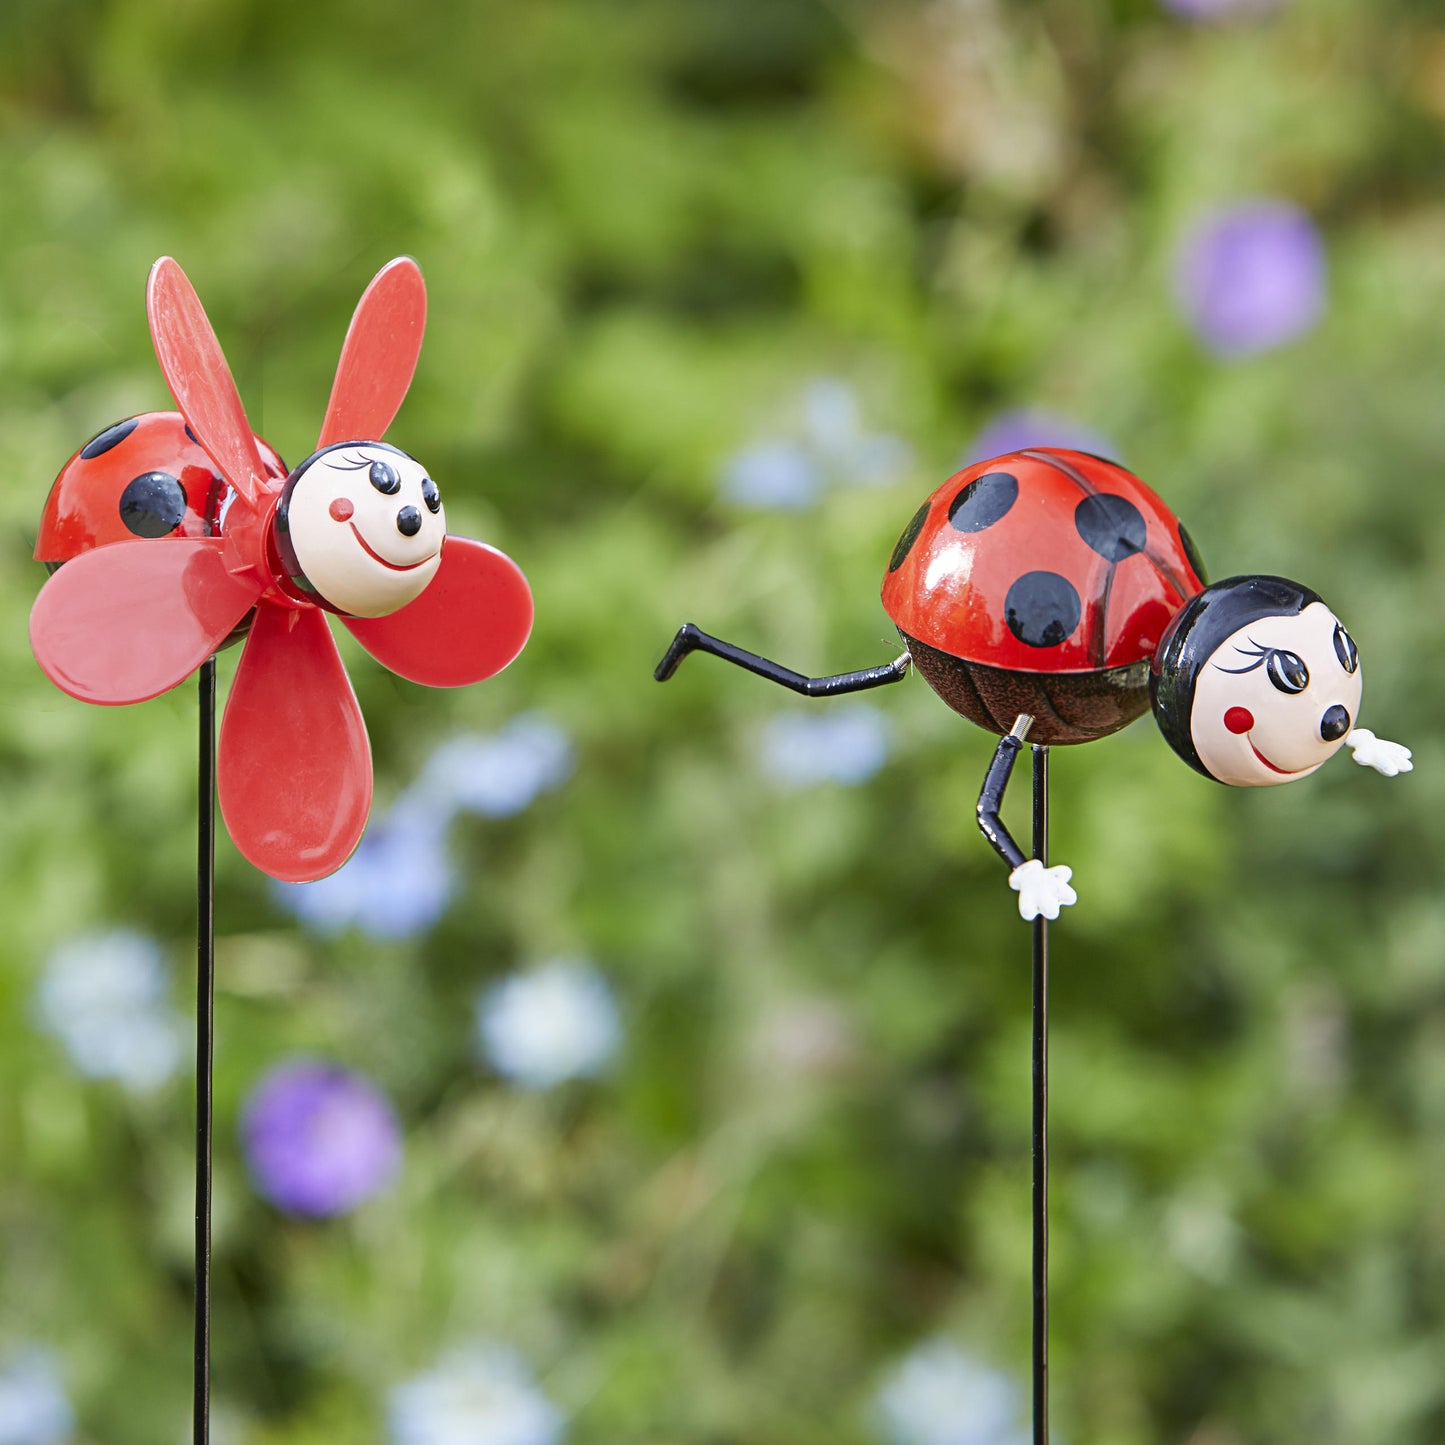 Loony Ladybugs ⸱ zápichy do záhrady s lienkami (sada 2ks)